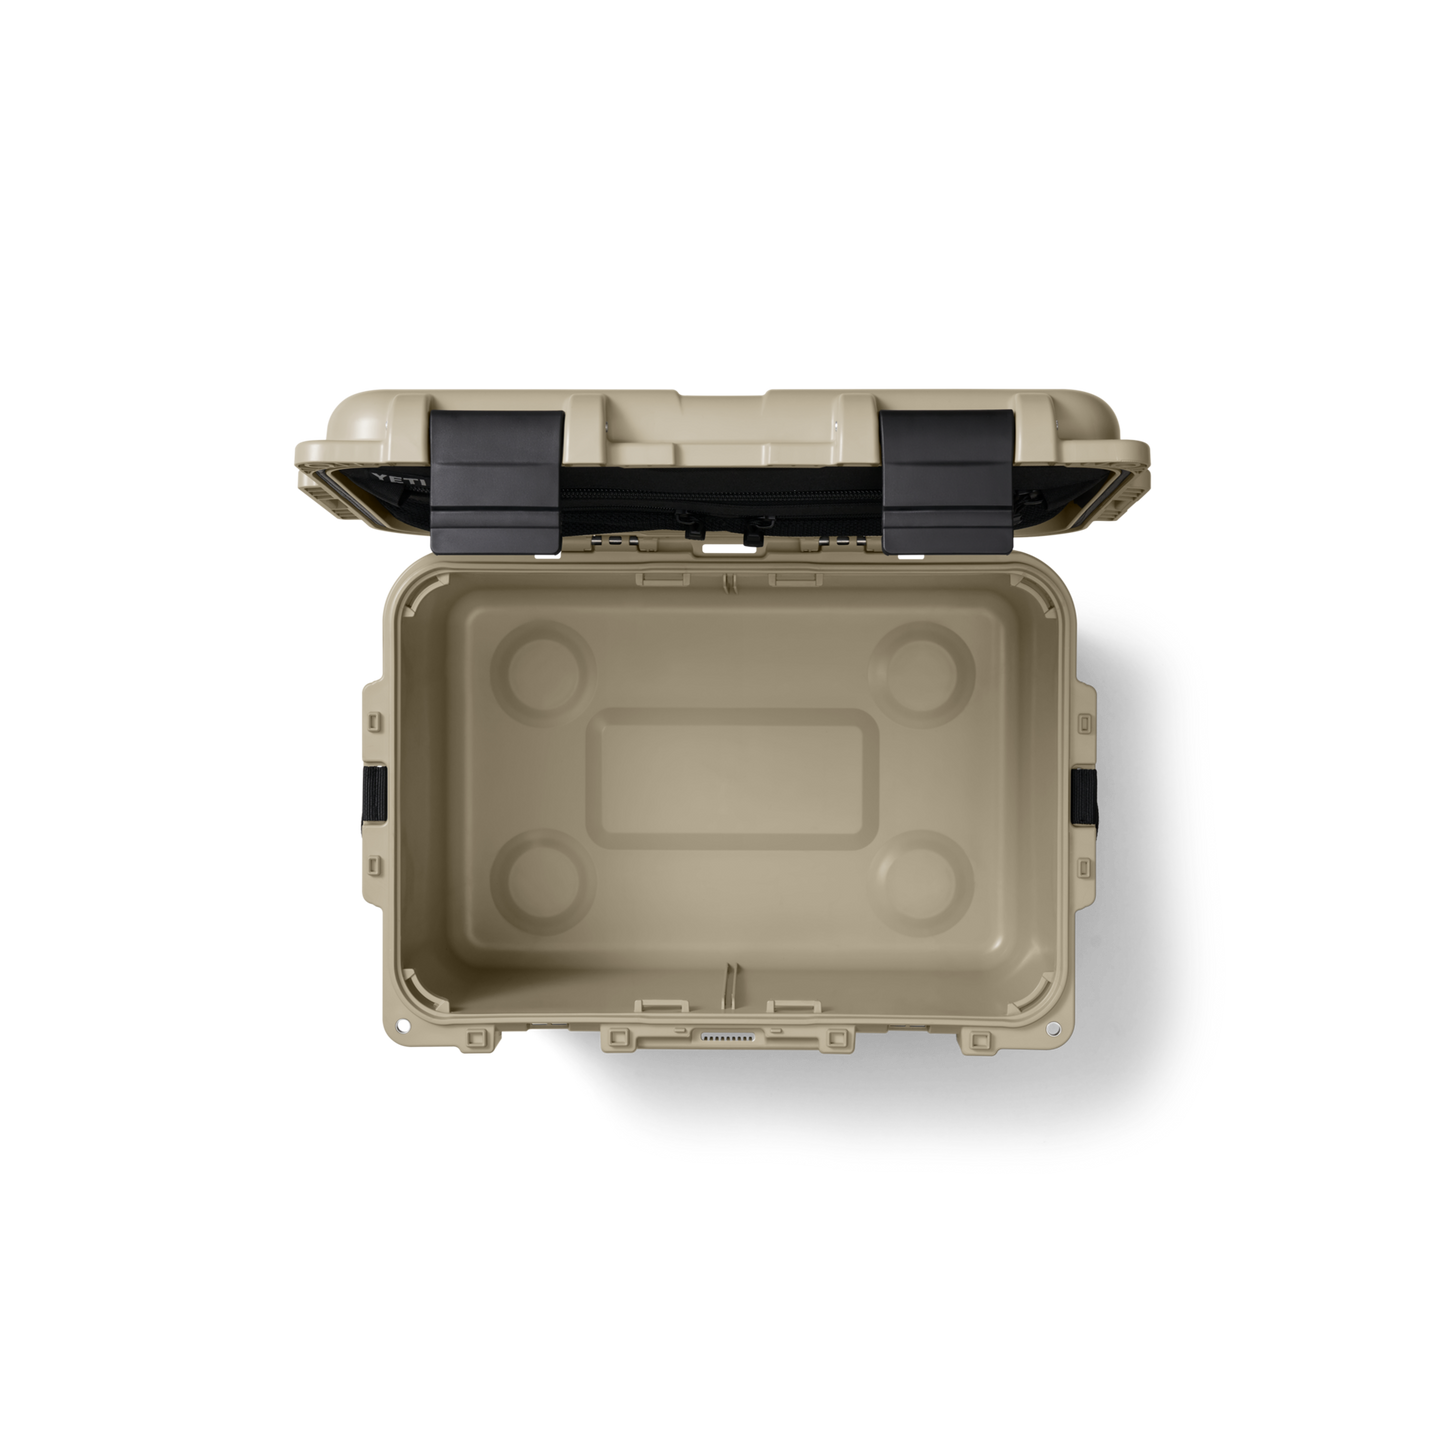 Yeti Loadout Go Box 30 Gear Case Desert Tan - Dogfish Tackle & Marine